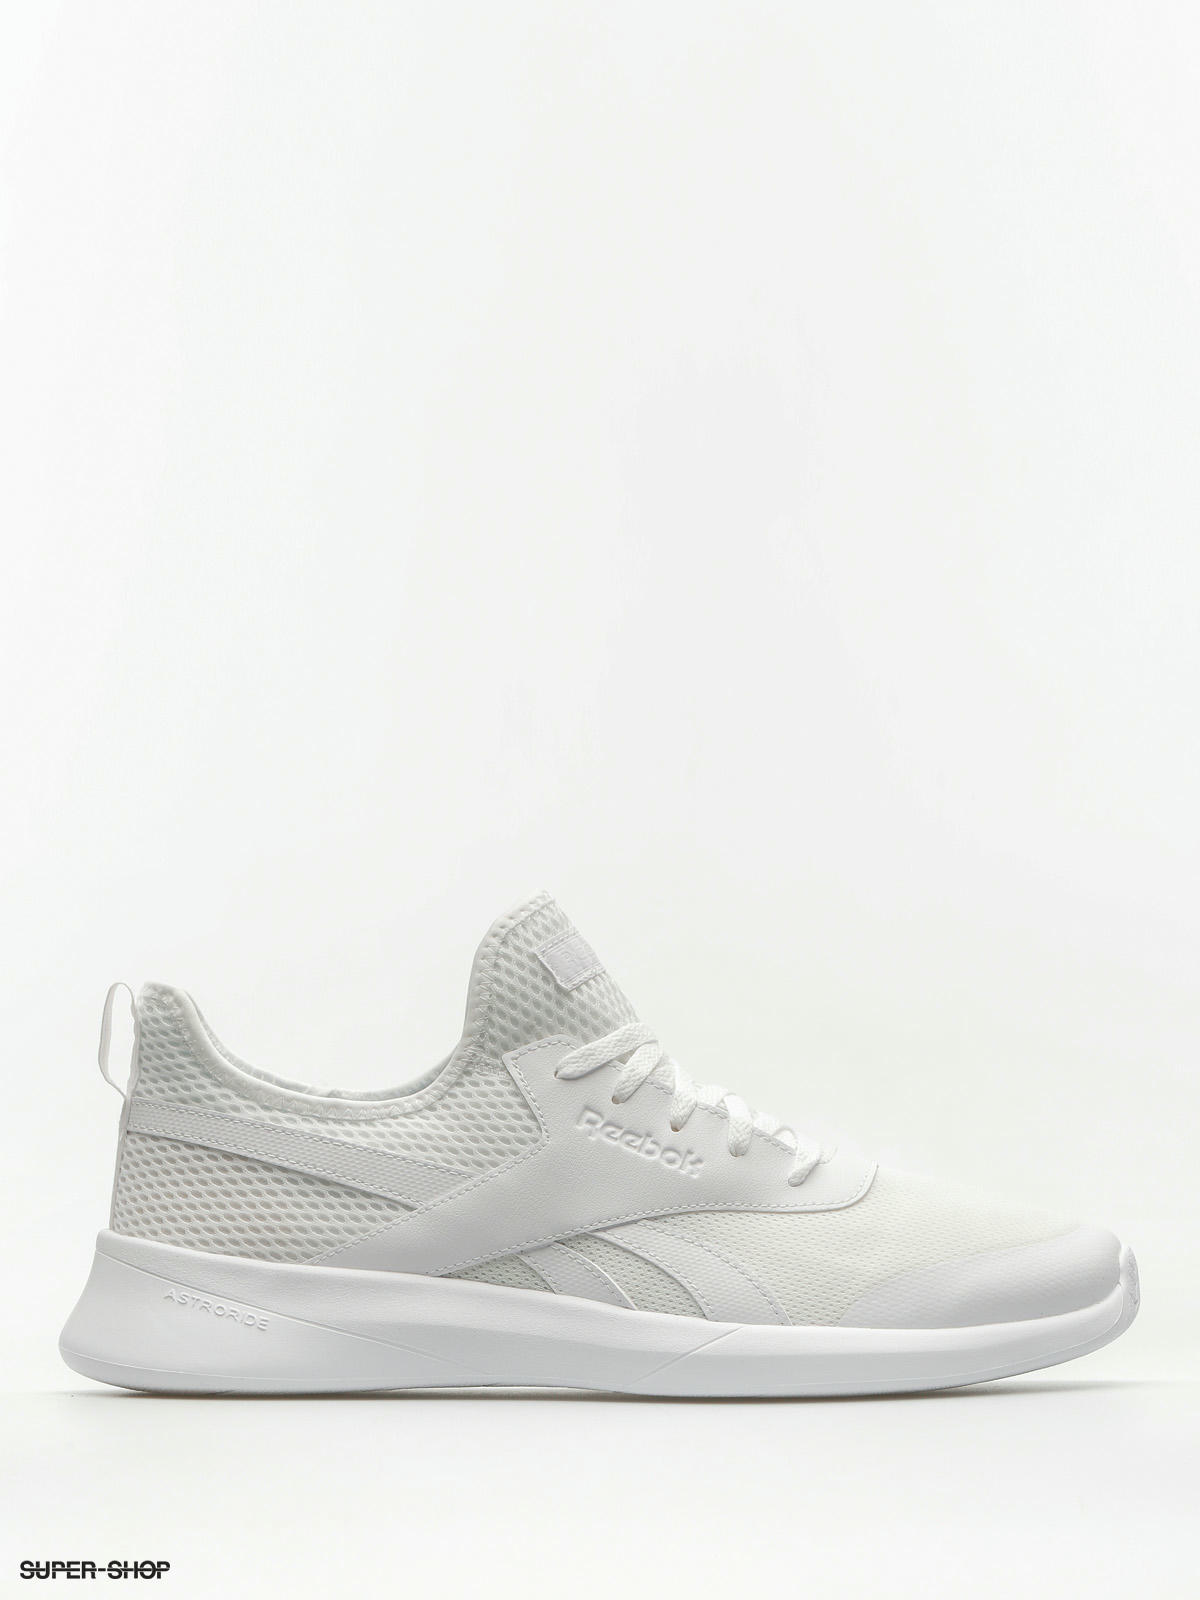 Reebok Shoes Royal Ec Rid (white/white)